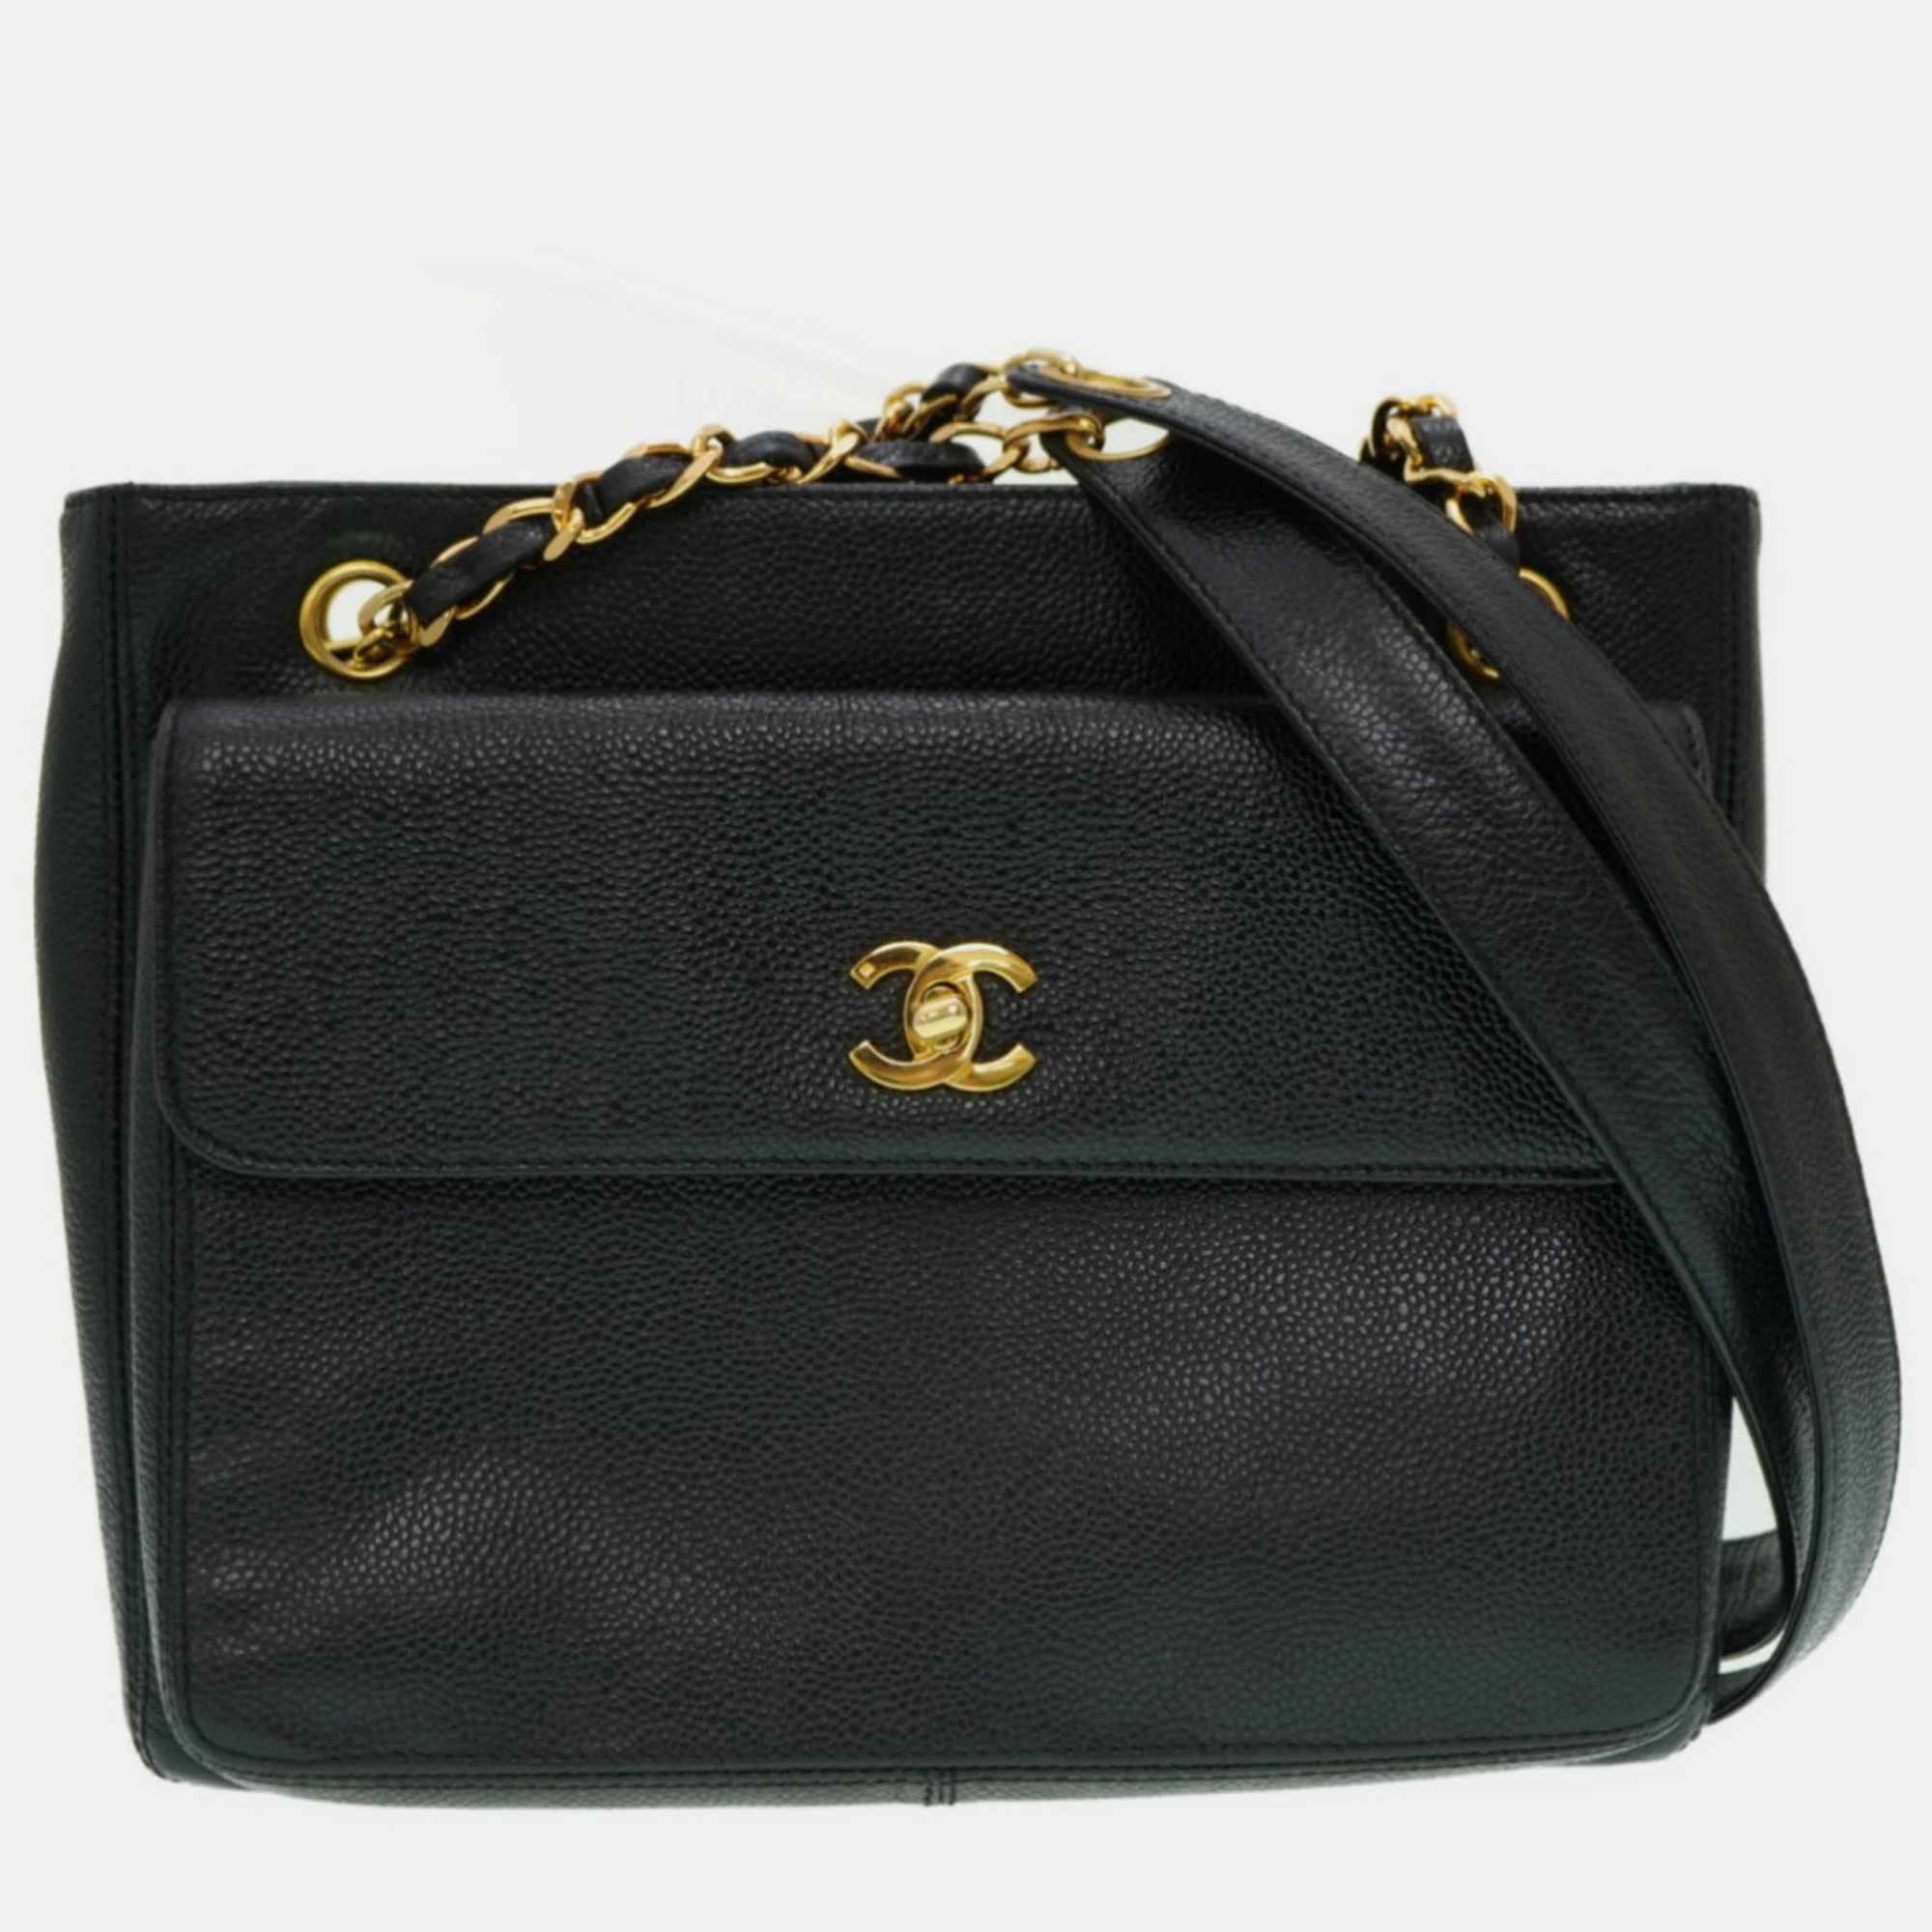 Chanel black caviar leather classic front pocket shoulder bag